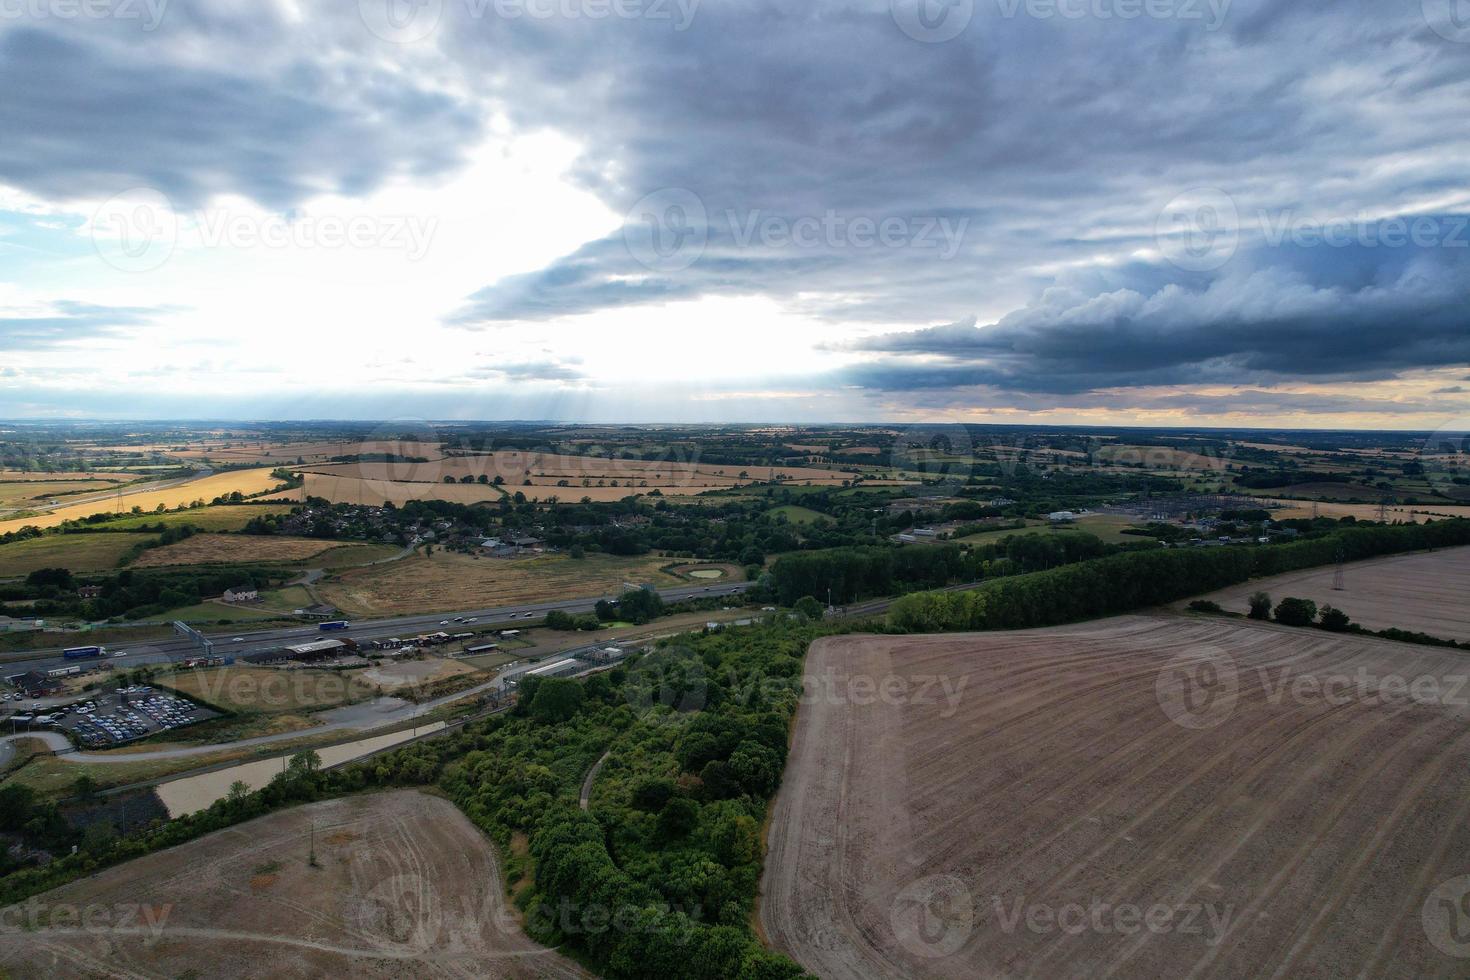 vista aerea e riprese dall'alto dello svincolo autostradale britannico dello svincolo 11a della m1 a North Luton, città dell'Inghilterra, Regno Unito. foto